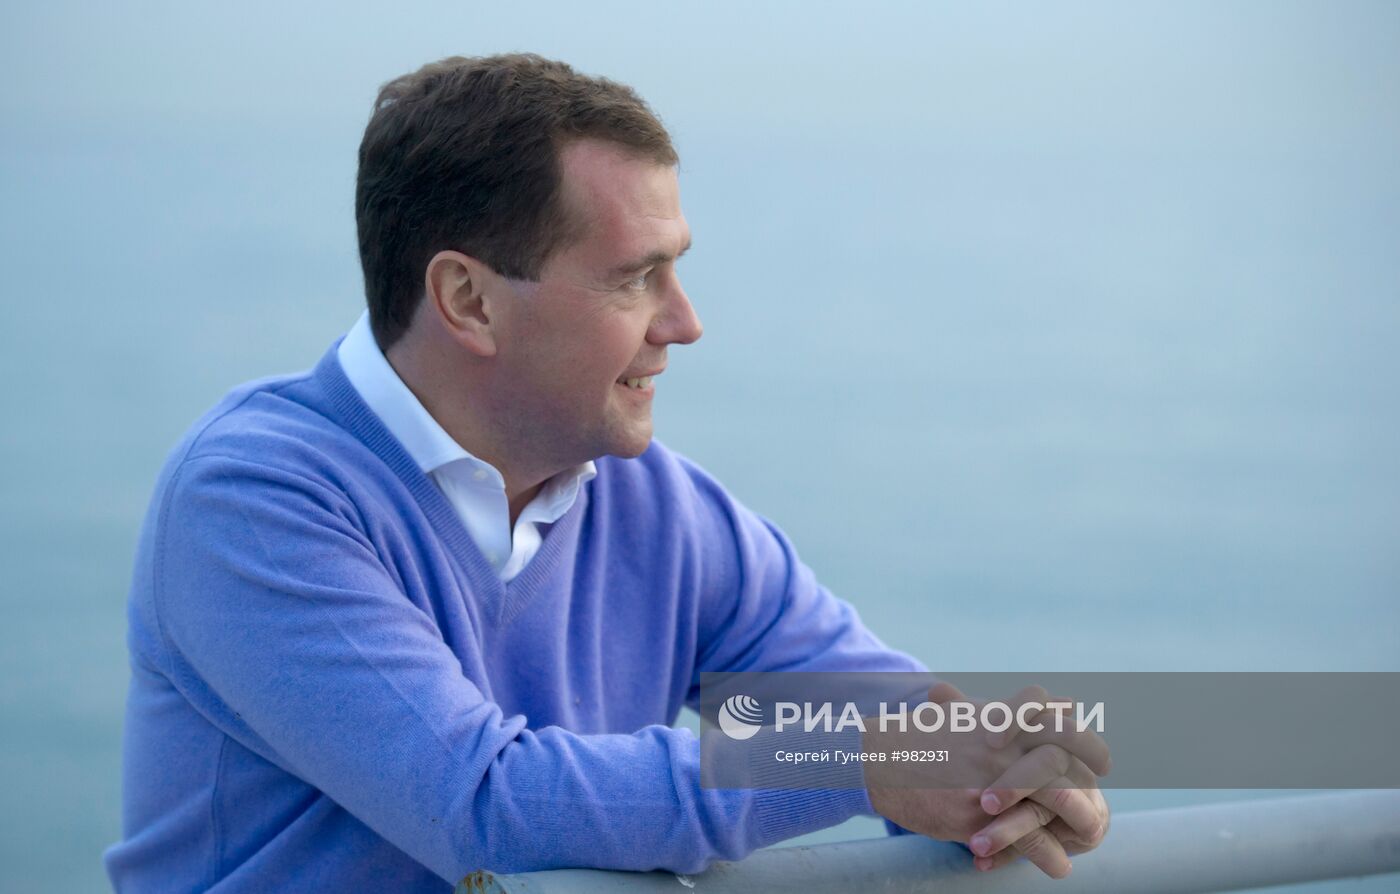 Дмитрий Медведев в сочинской резиденции "Бочаров ручей"